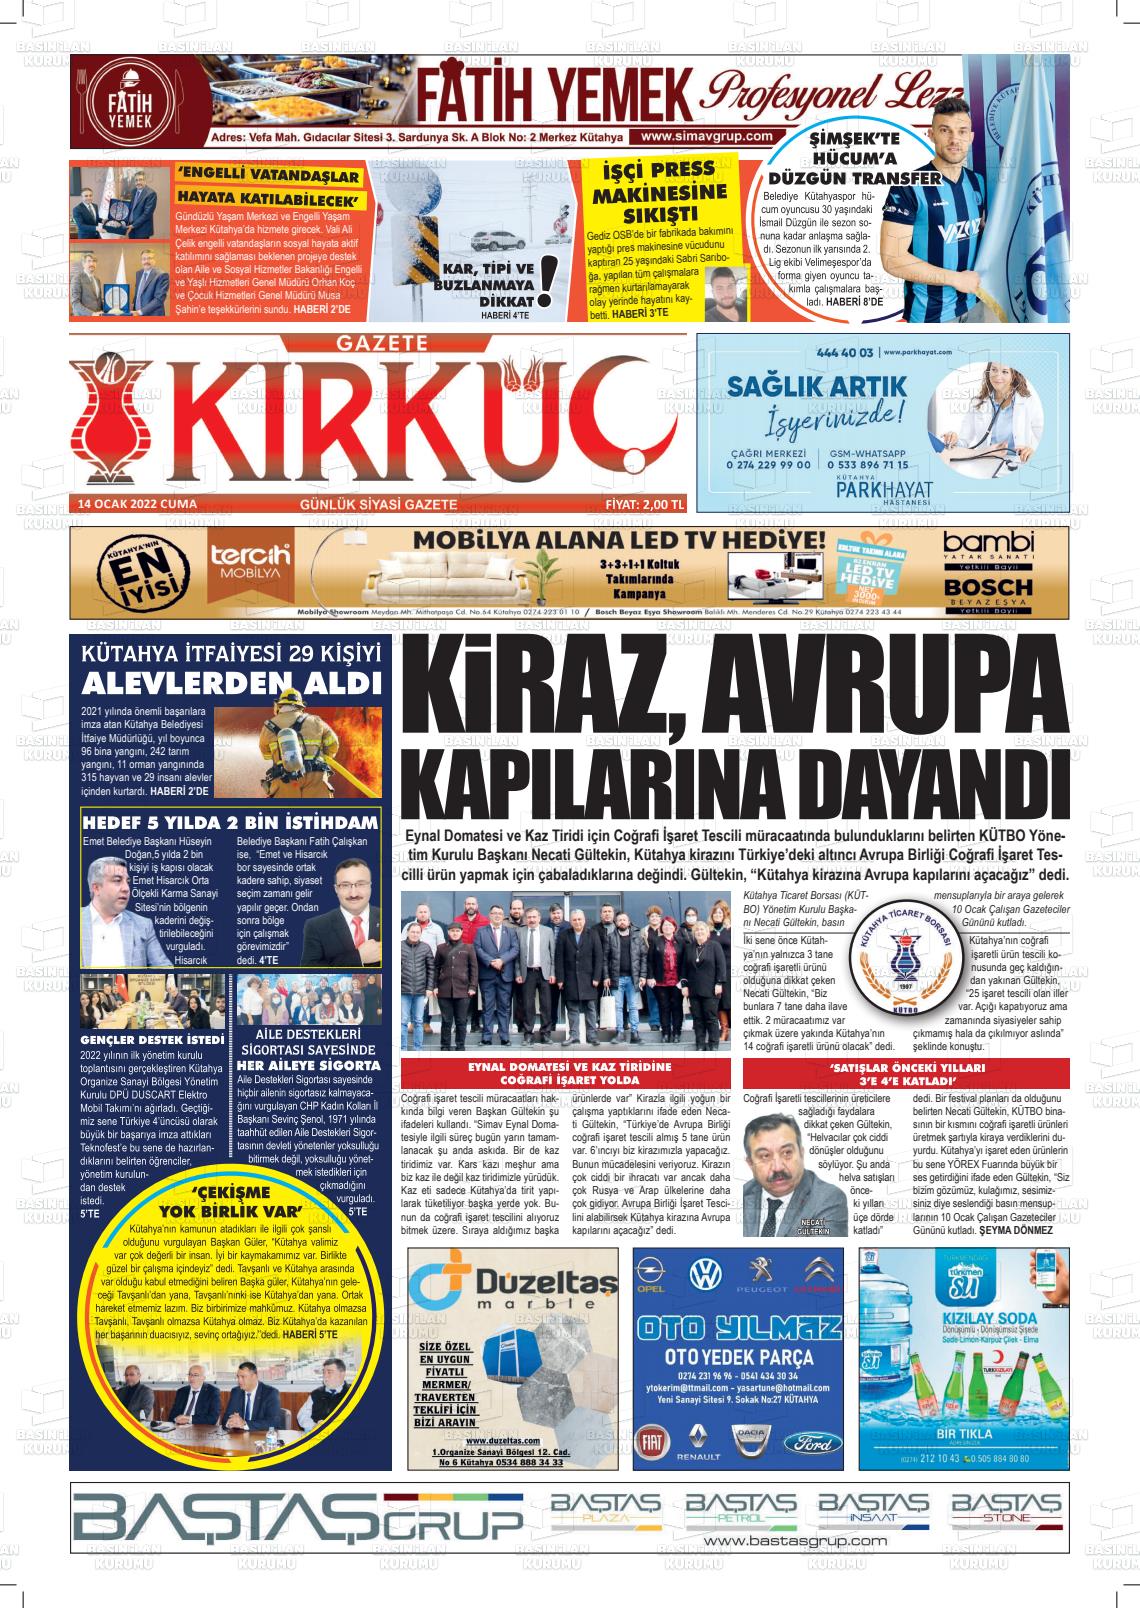 14 Ocak 2022 Gazete Kırküç Gazete Manşeti